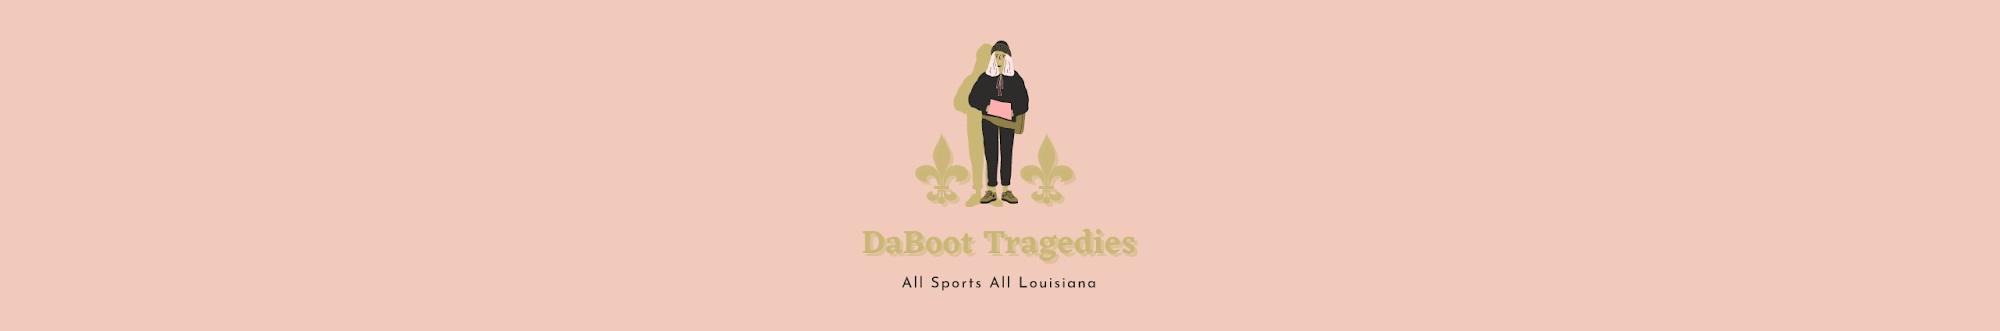 DaBoot Tragedies